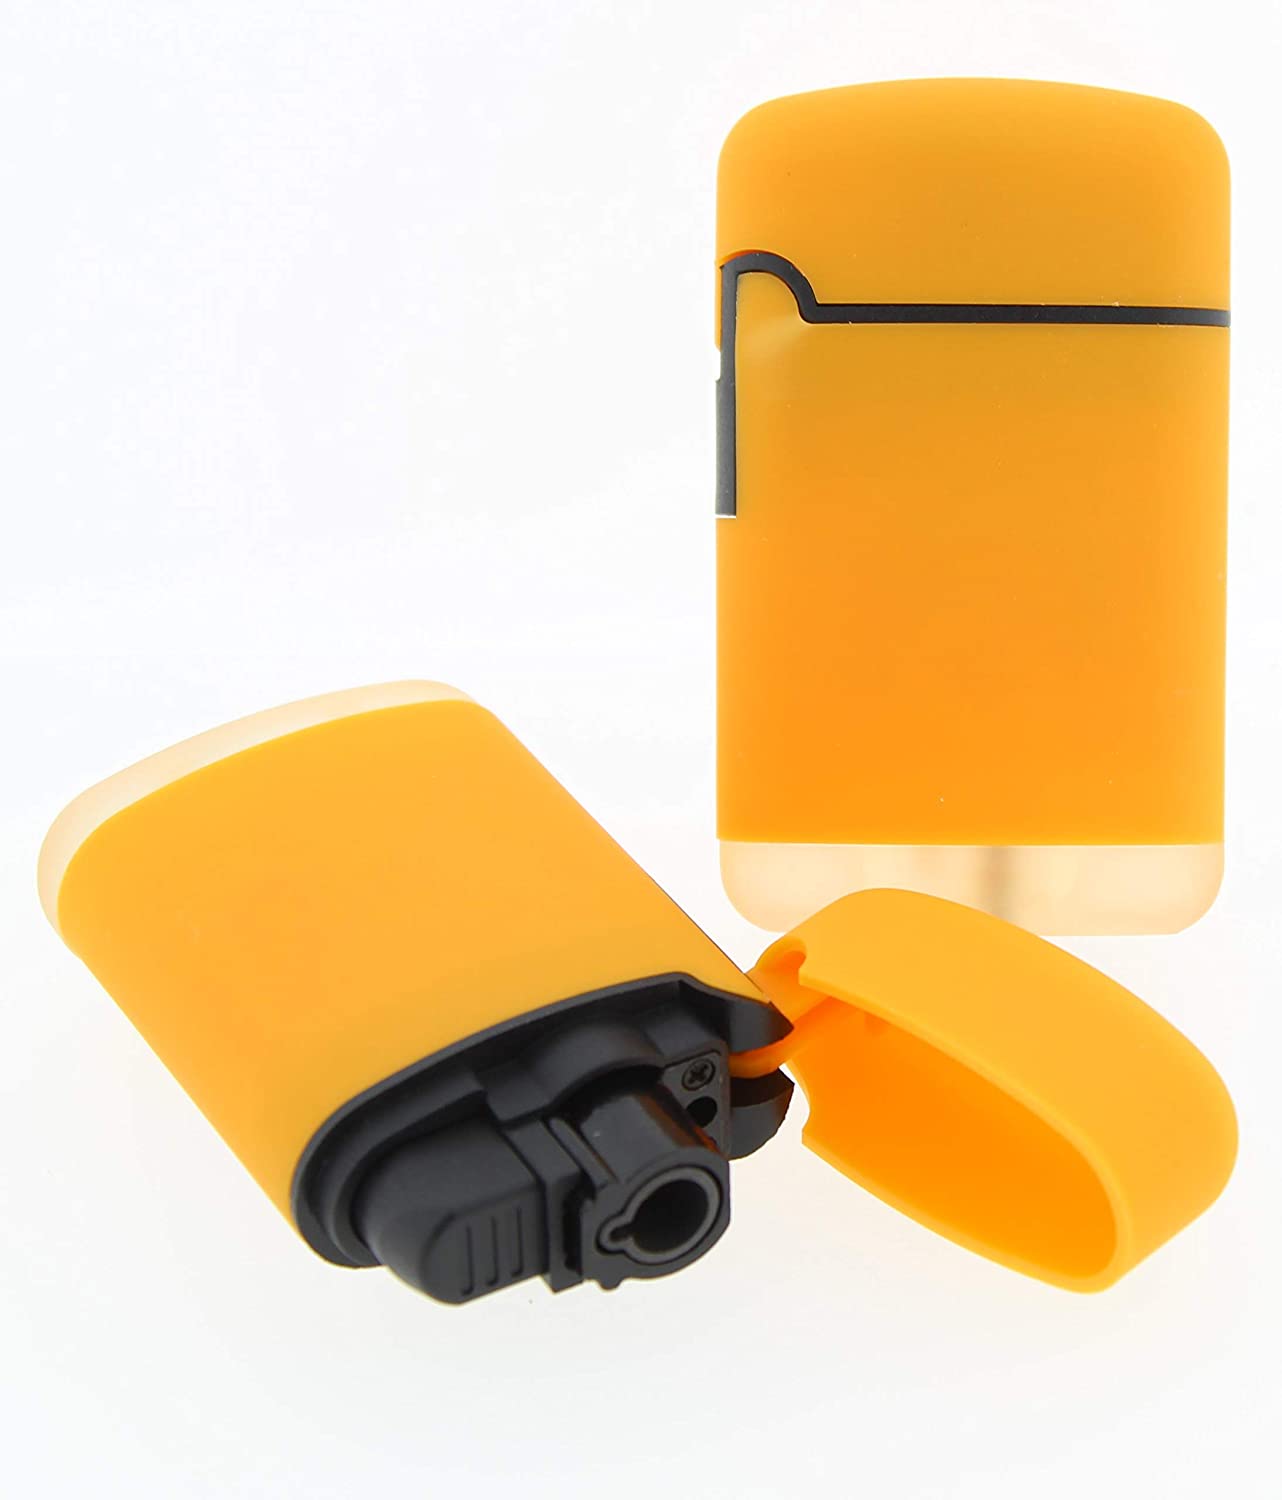 Feuerzeug Sturmfeuerzeug - Original Easy TORCH8® Jet Outdoor Gas-Sturmfeuerzeug mit gummierter Oberfläche. 2er Pack. (Orange)